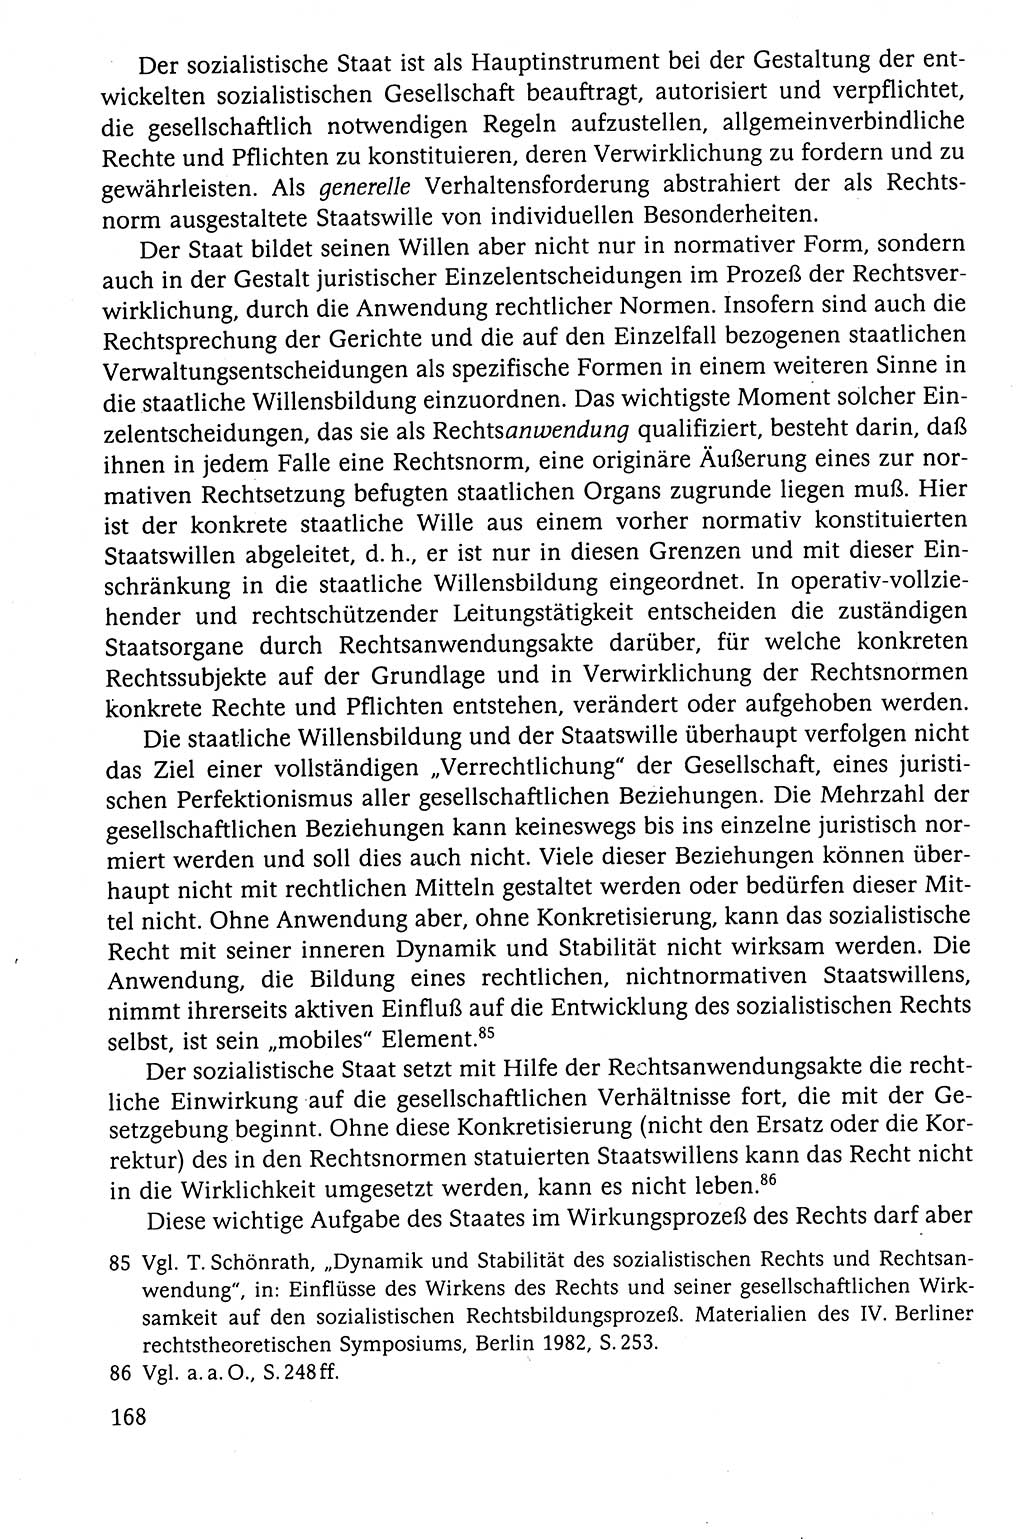 Der Staat im politischen System der DDR (Deutsche Demokratische Republik) 1986, Seite 168 (St. pol. Sys. DDR 1986, S. 168)